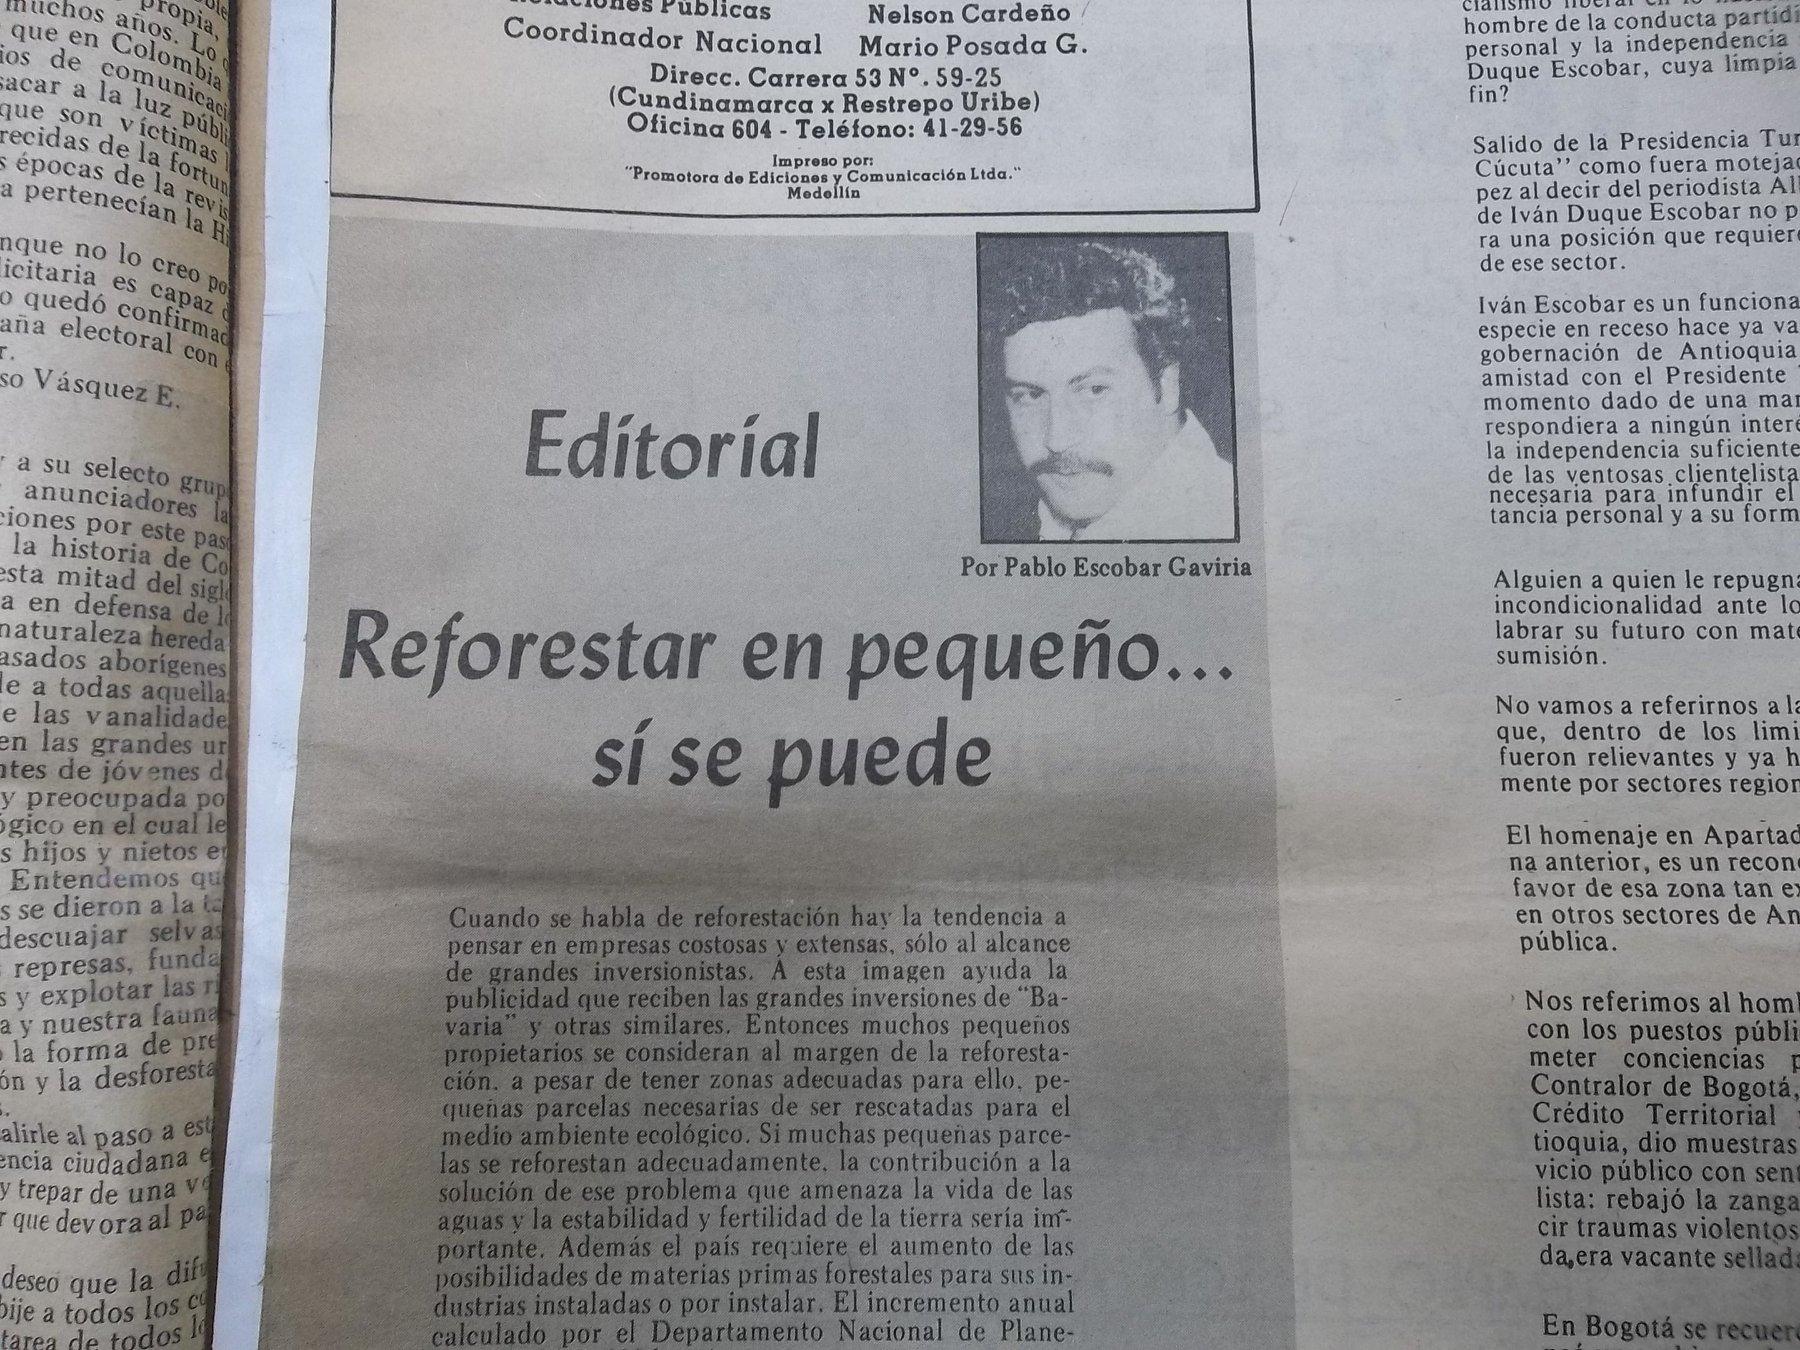 Javier Mejía в Twitter: „Medellín Cívico, 11 de julio de 1982. https://t.co/jYDy7pl8ul“ / Twitter